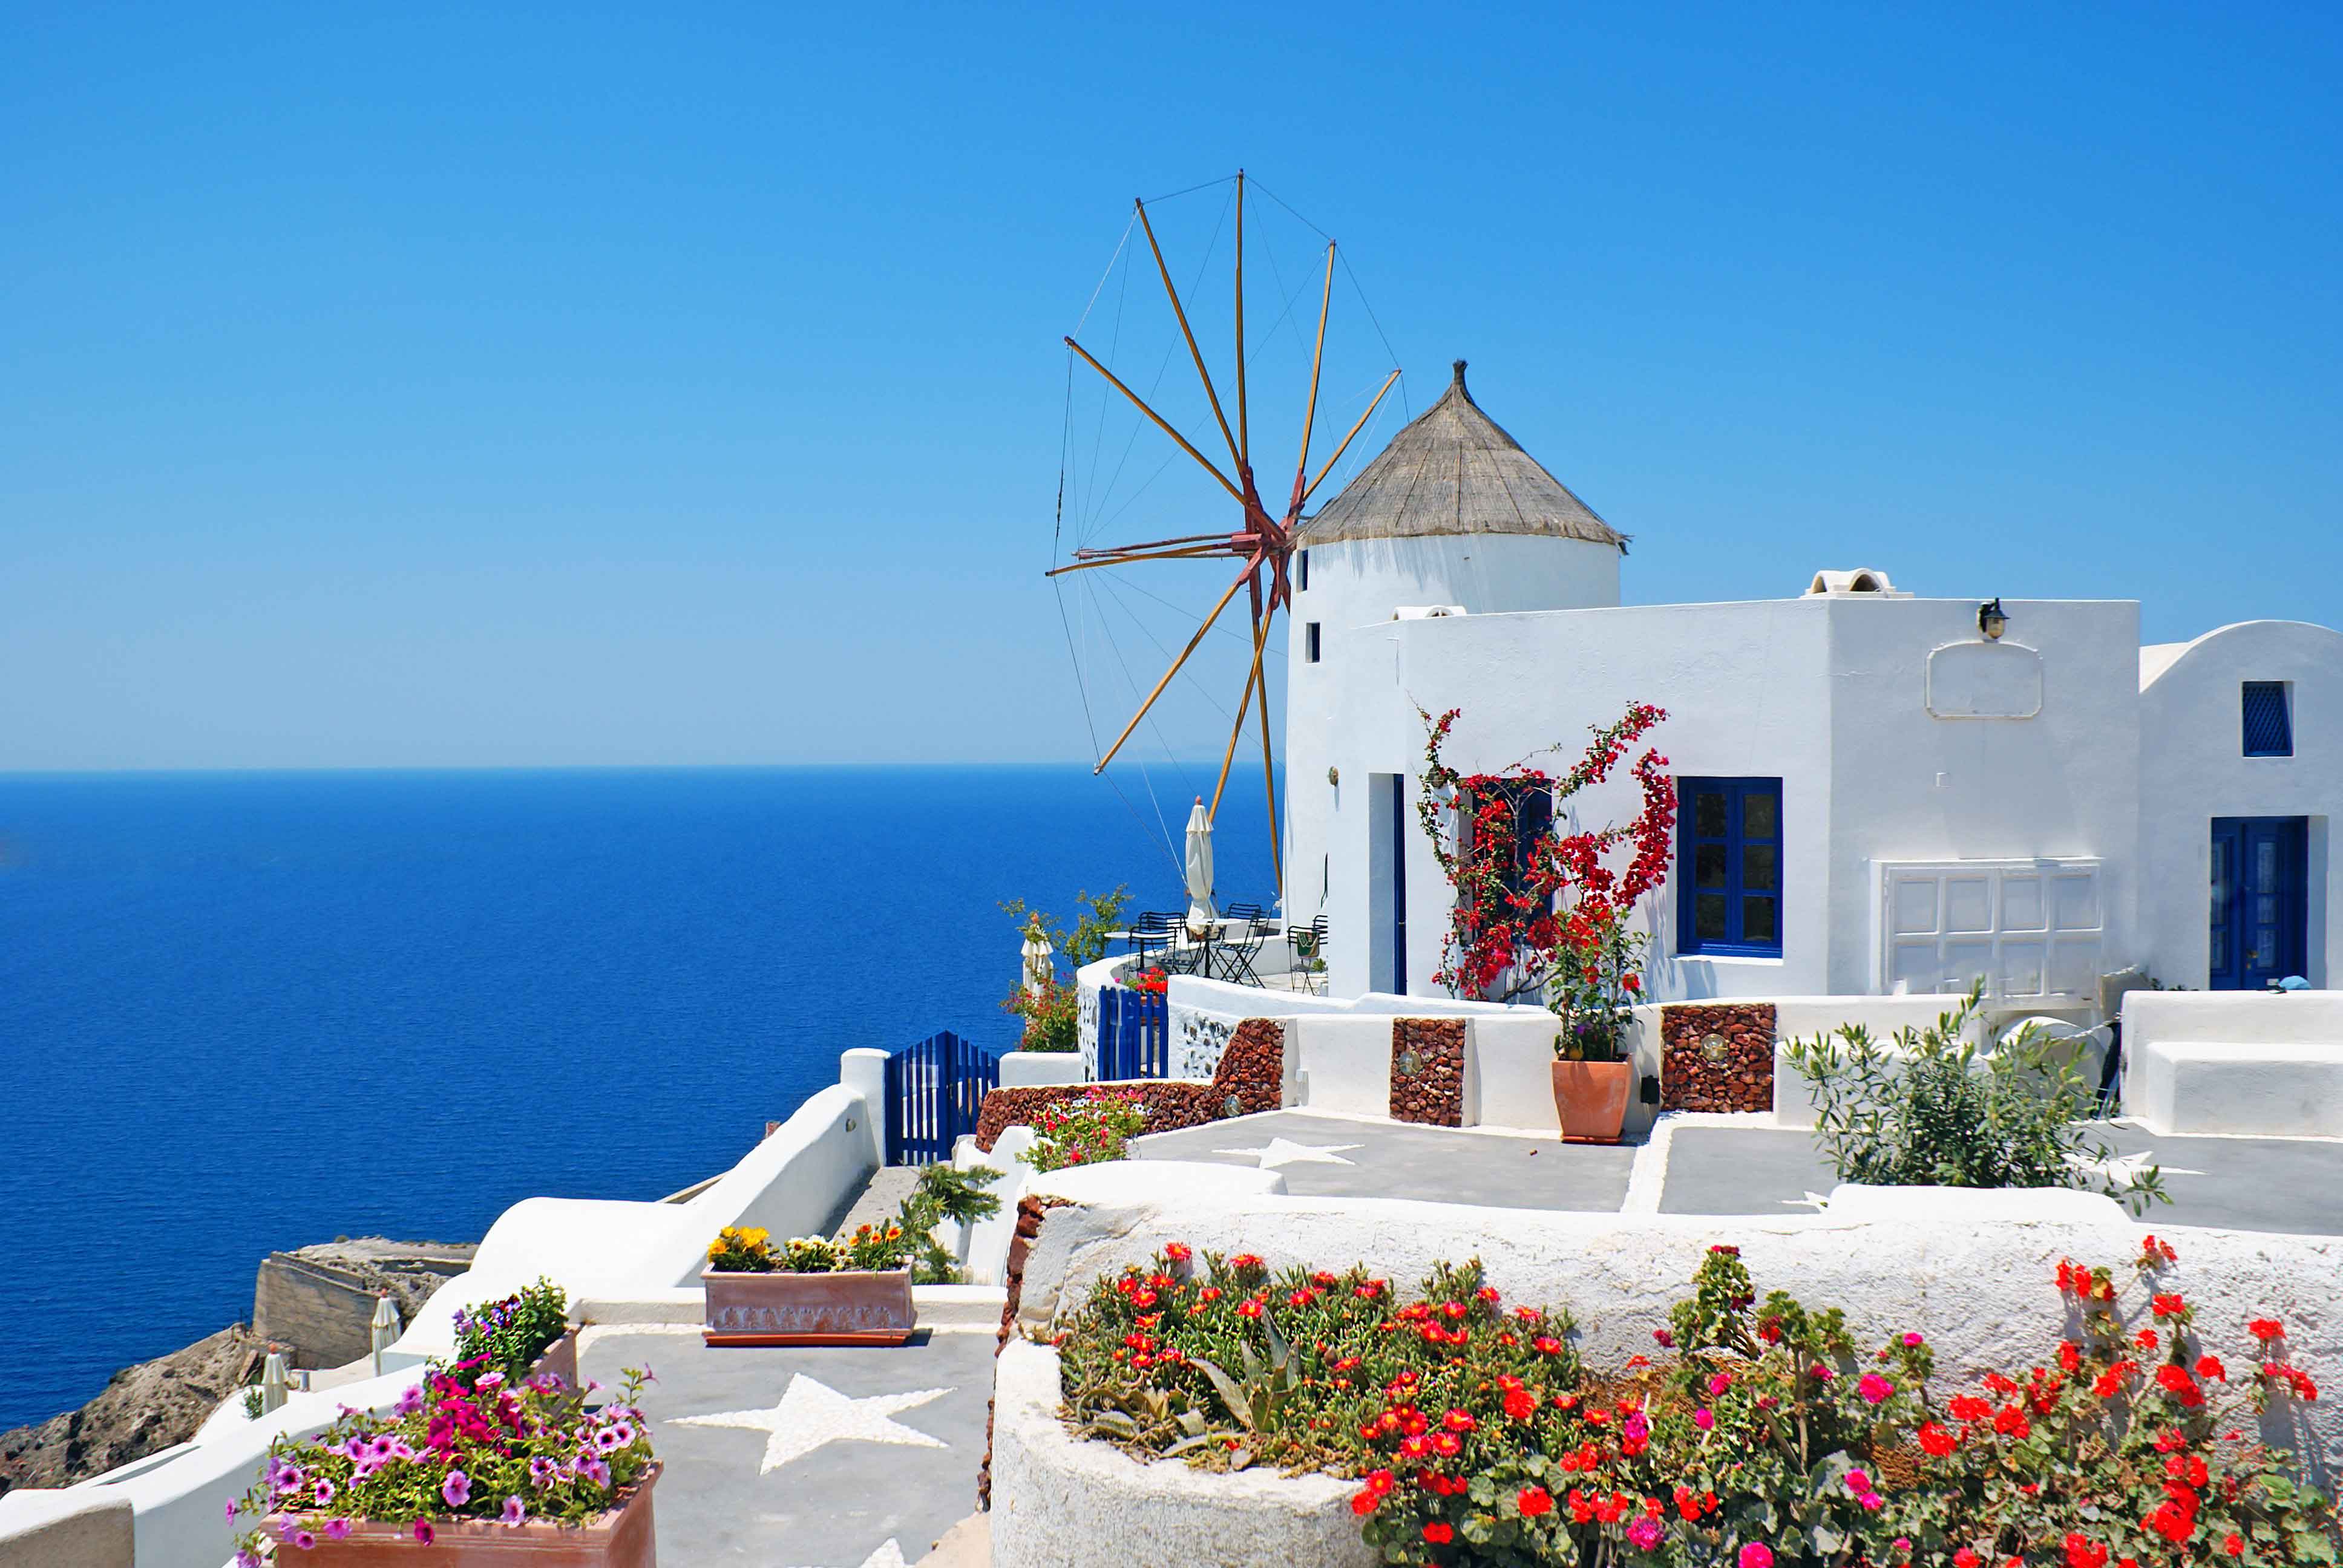 Griechische Windmühle